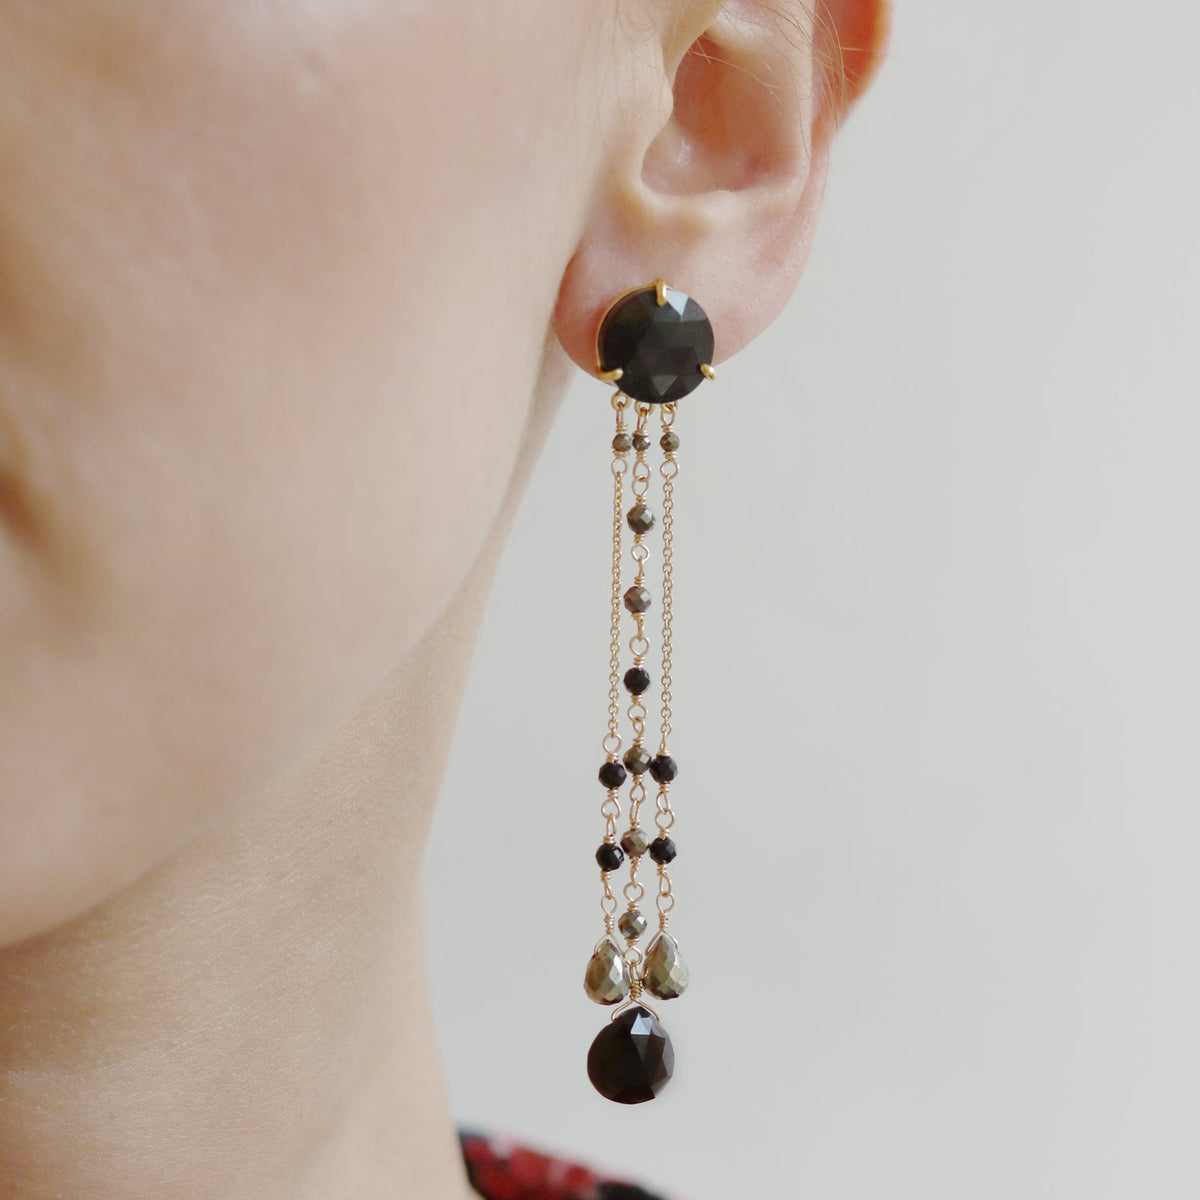 Black Onyx Chandelier Earrings